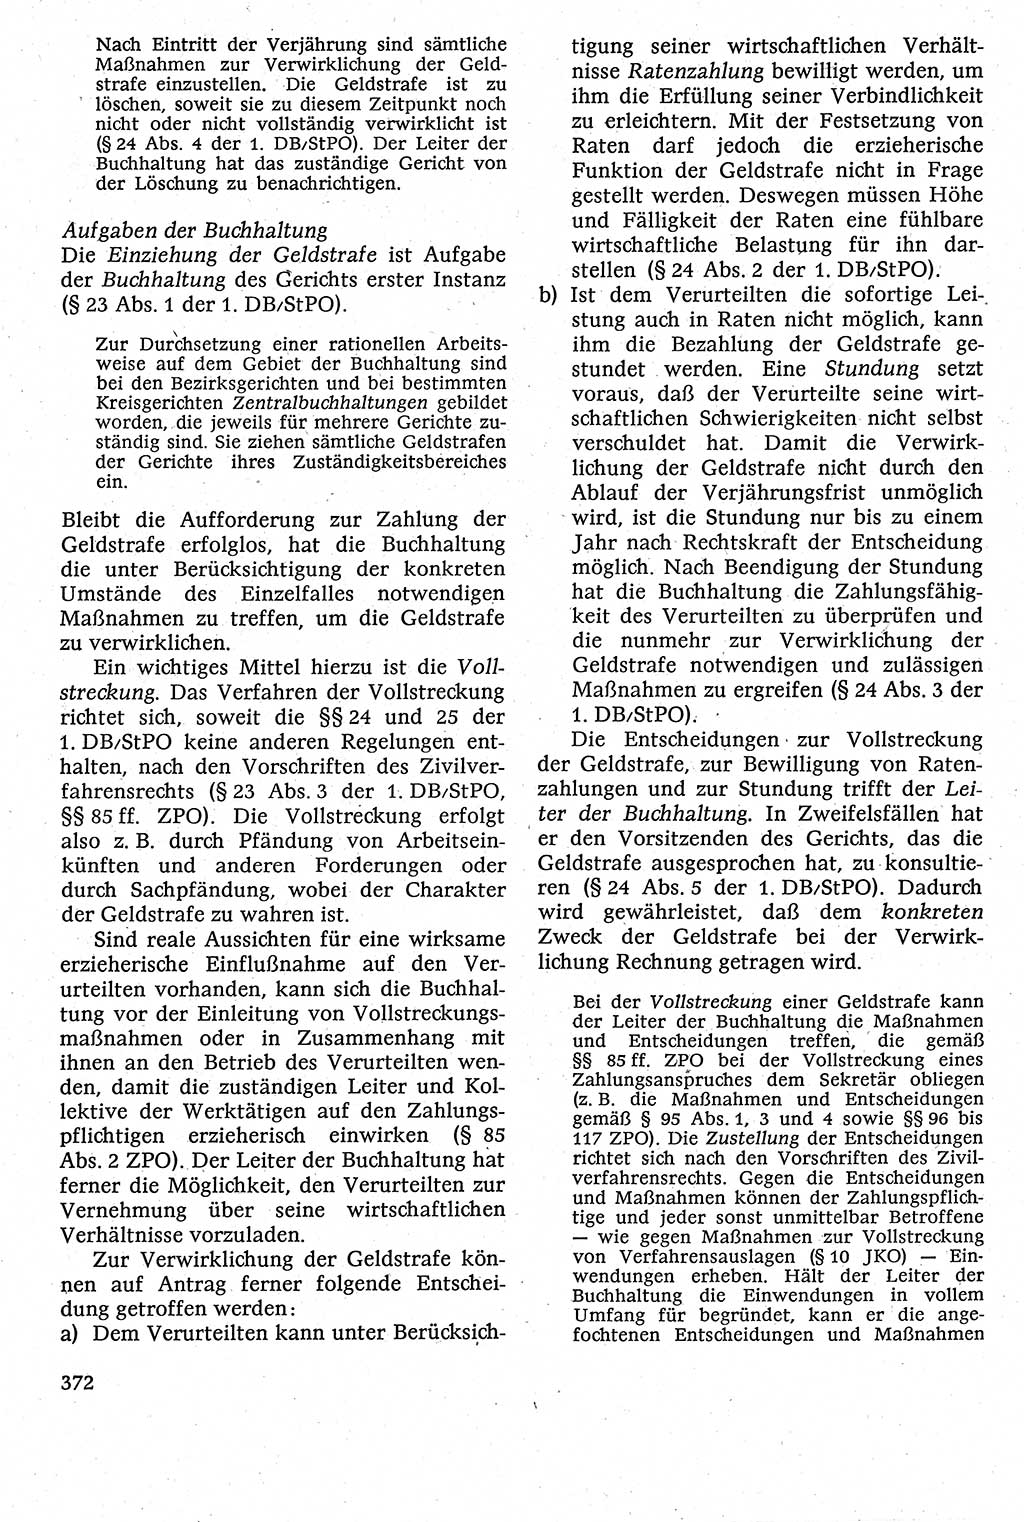 Strafverfahrensrecht [Deutsche Demokratische Republik (DDR)], Lehrbuch 1982, Seite 372 (Strafverf.-R. DDR Lb. 1982, S. 372)